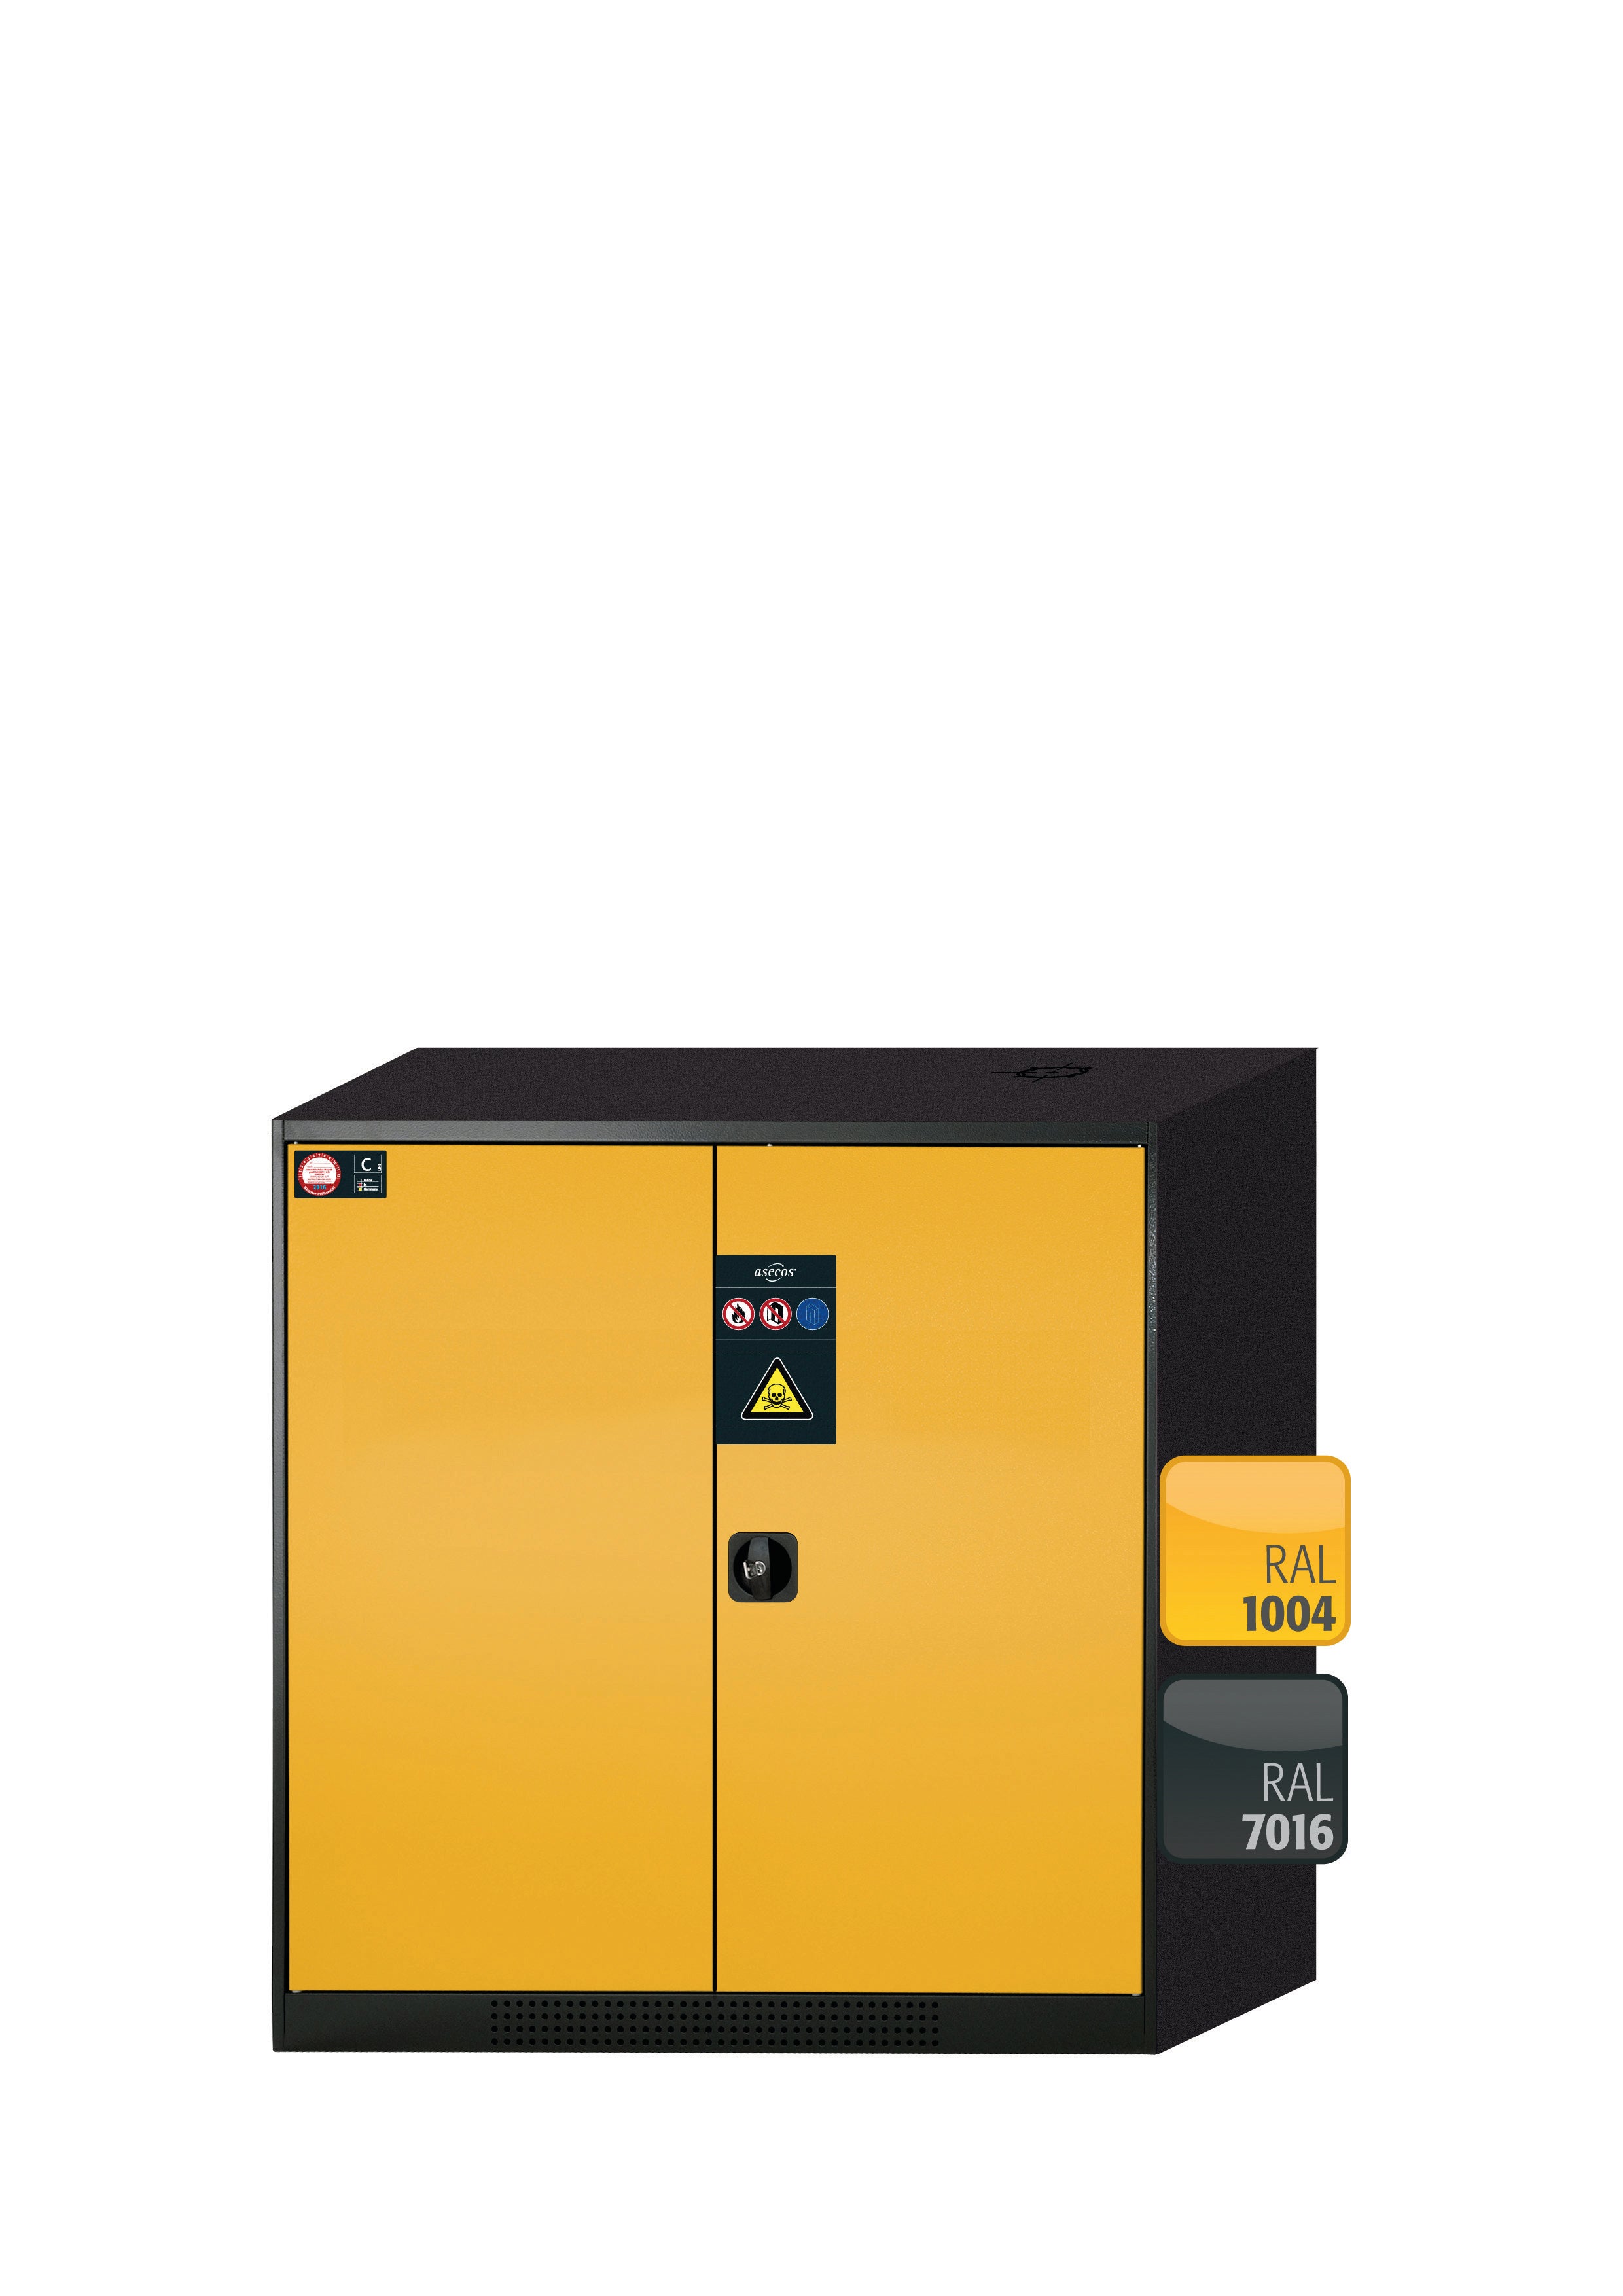 Armoire chimique CS-CLASSIC modèle CS.110.105 en jaune sécurité RAL 1004 avec 3 étagères coulissantes AbZ (tôle d'acier/polypropylène)